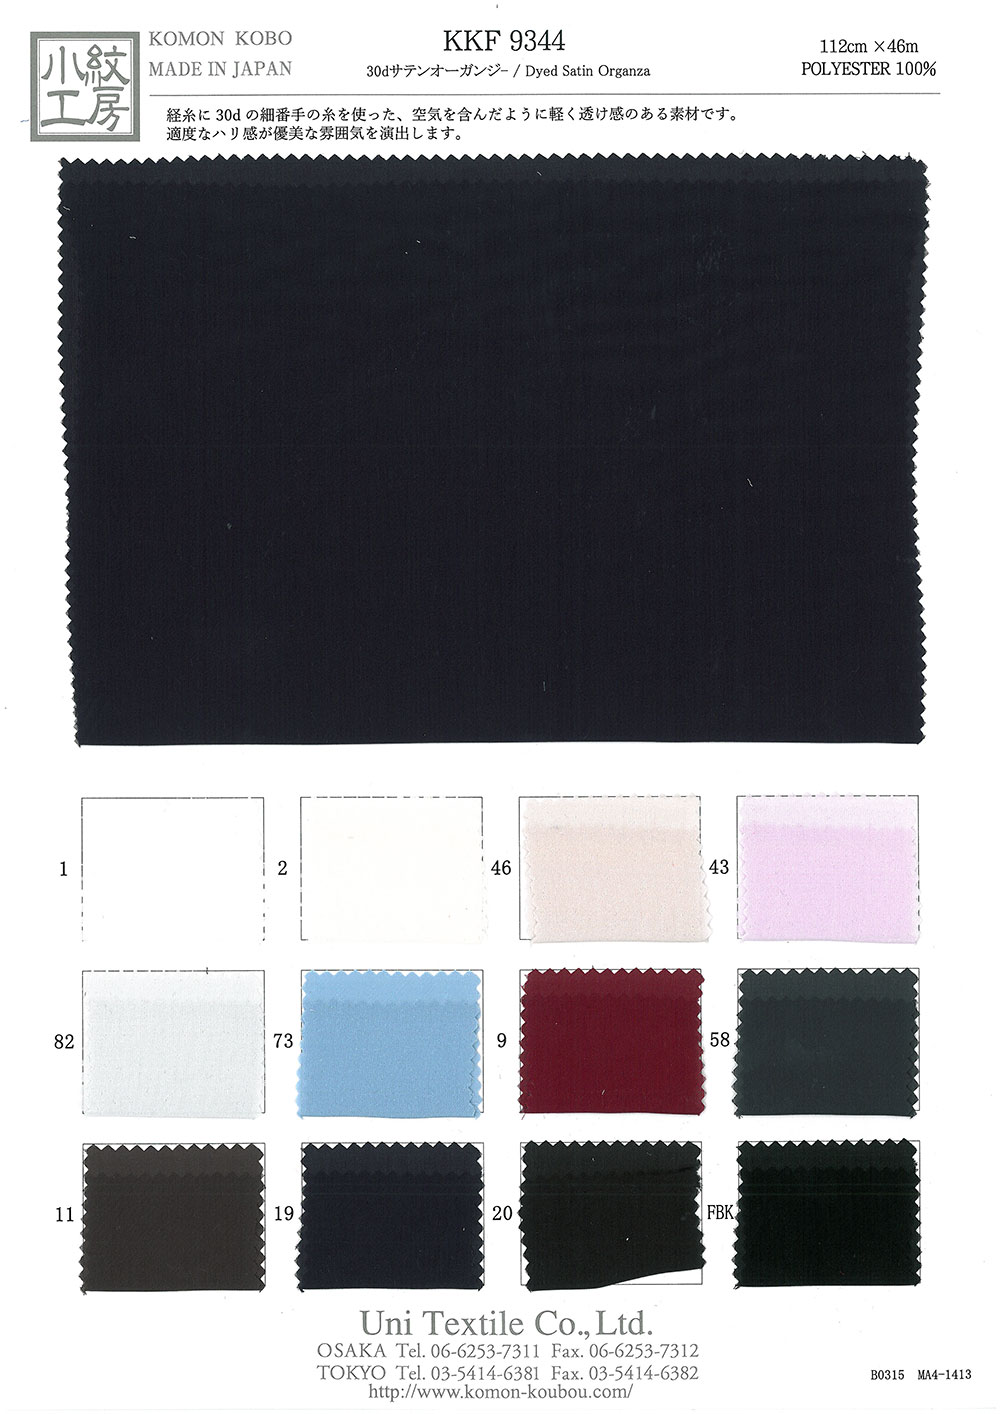 KKF9344 30d Satin Organdy[Têxtil / Tecido] Uni Textile